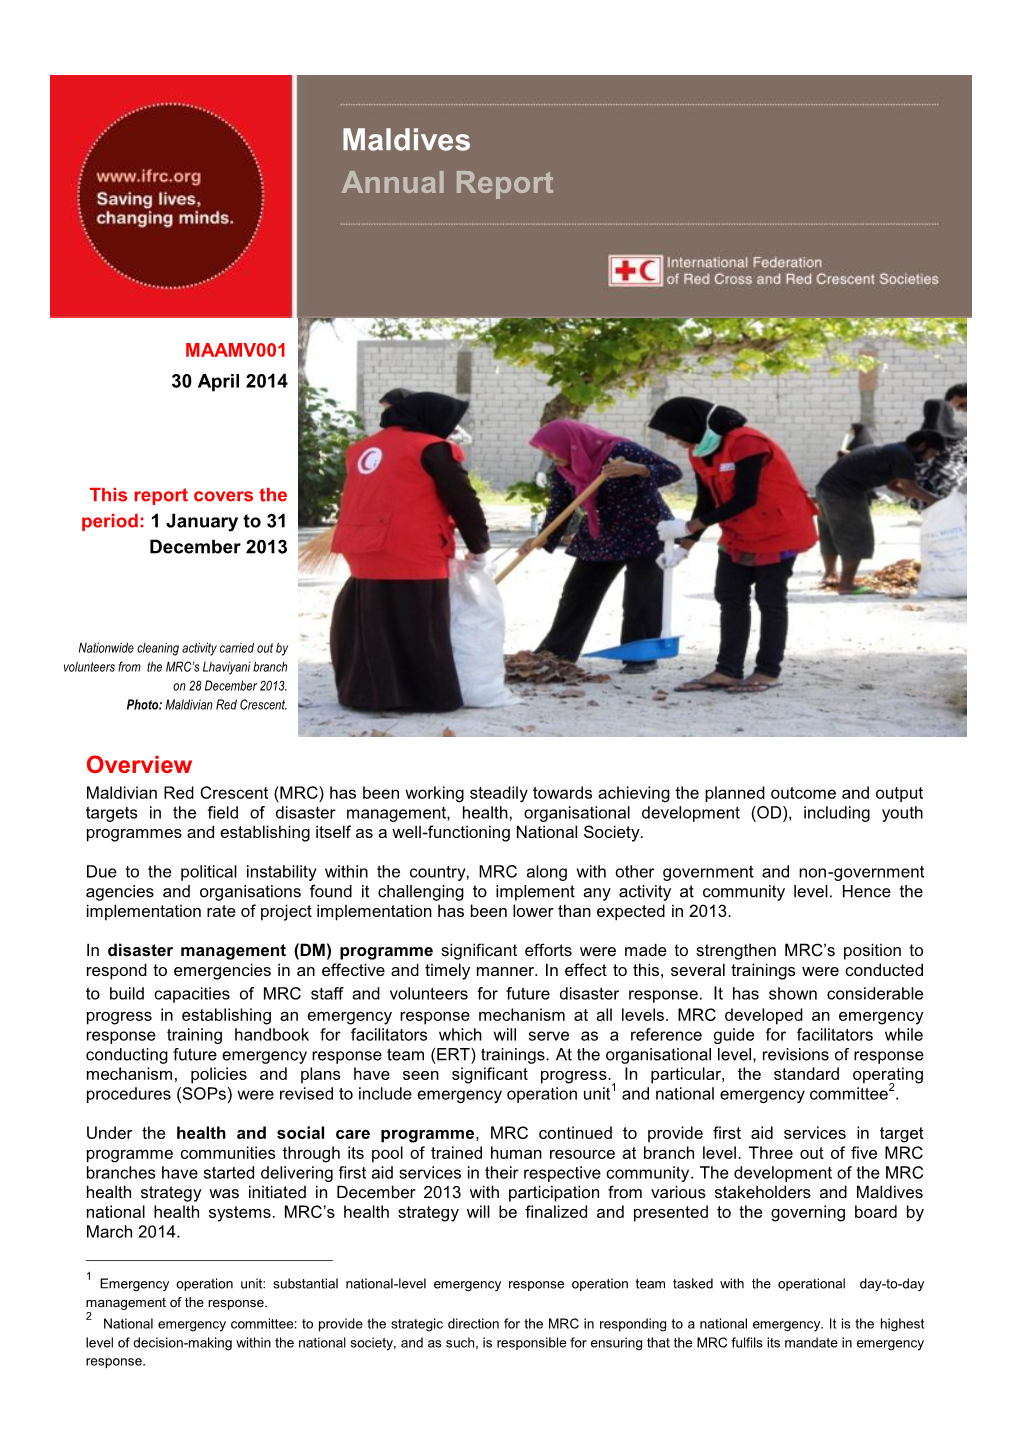 Maldives Annual Report